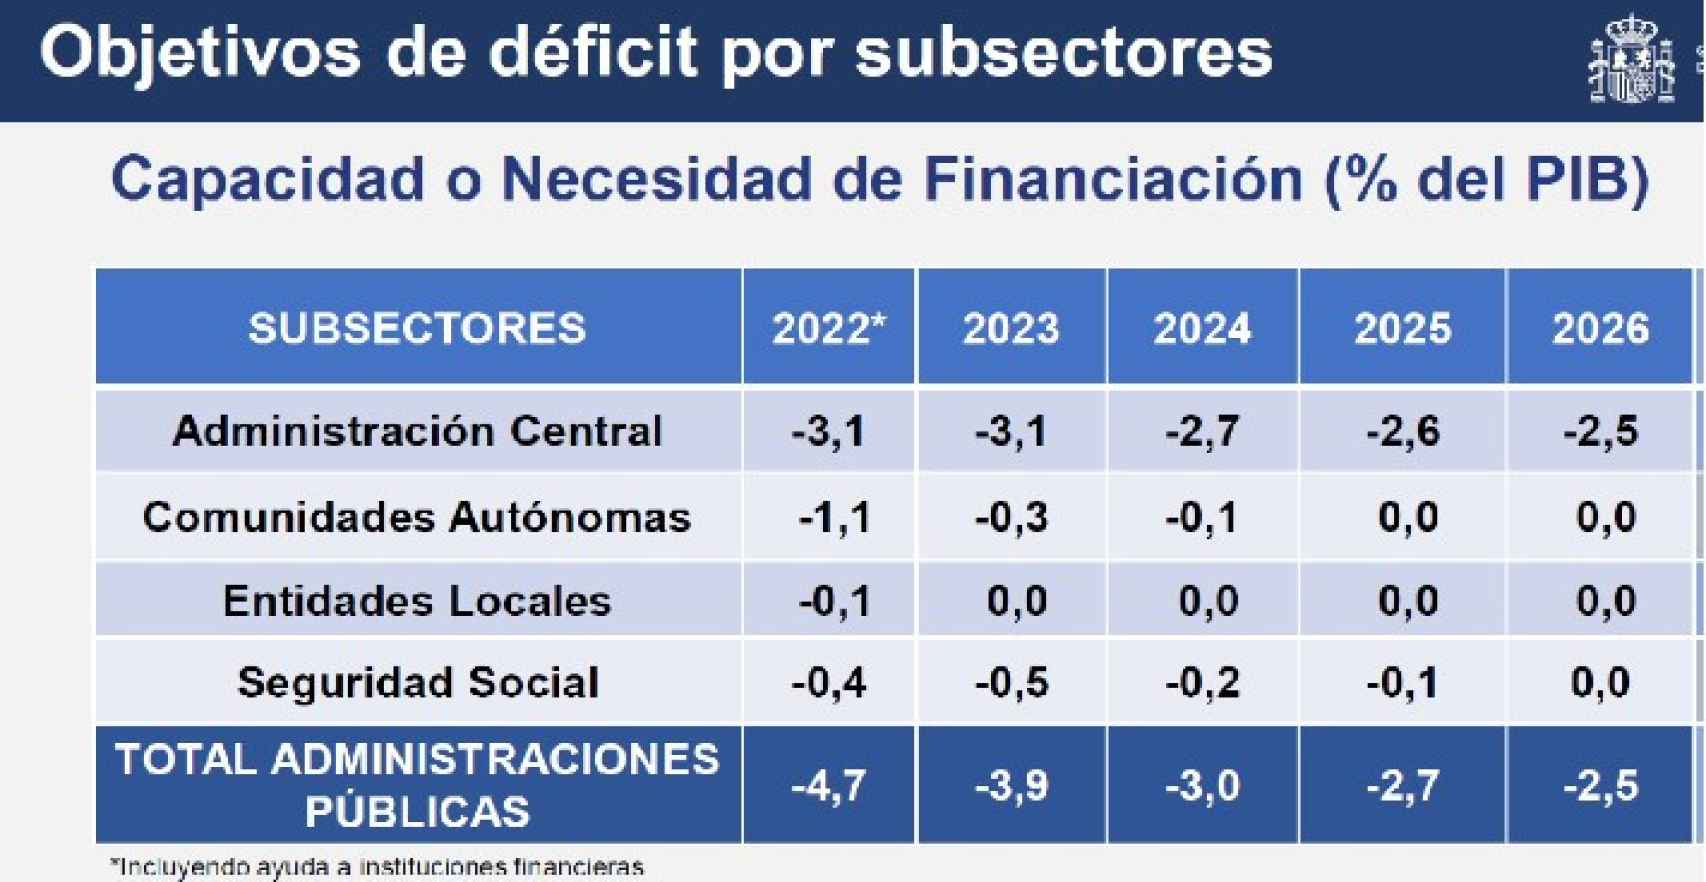 Cuadro 1. Objetivos de déficit público en España